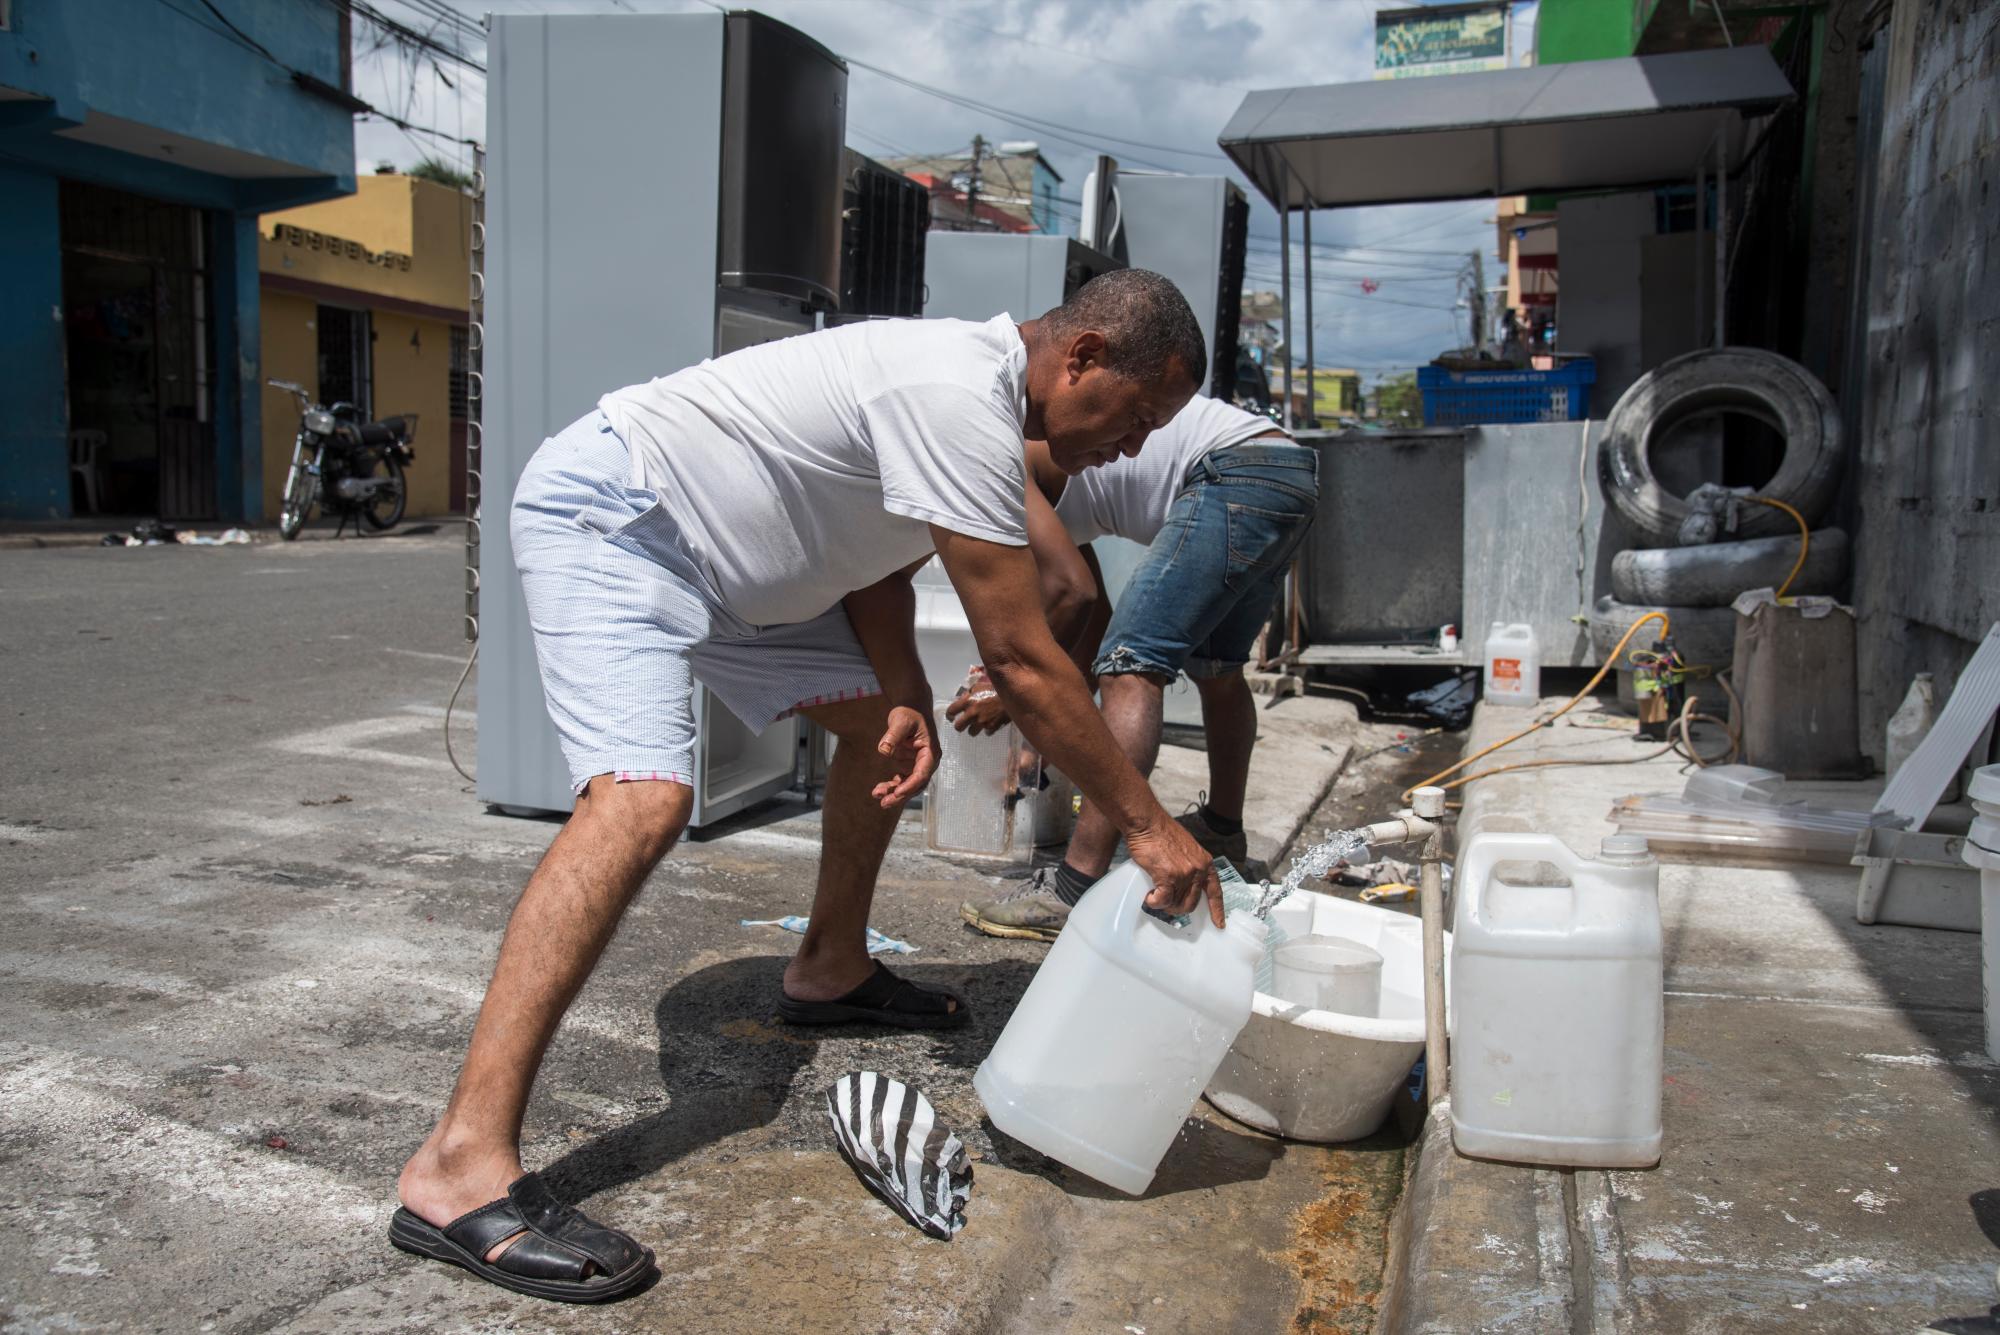 Un señor se abastece de agua en el barrio 27 de febrero en el Distrito Nacional. Domingo 10 de marzo de 2019.